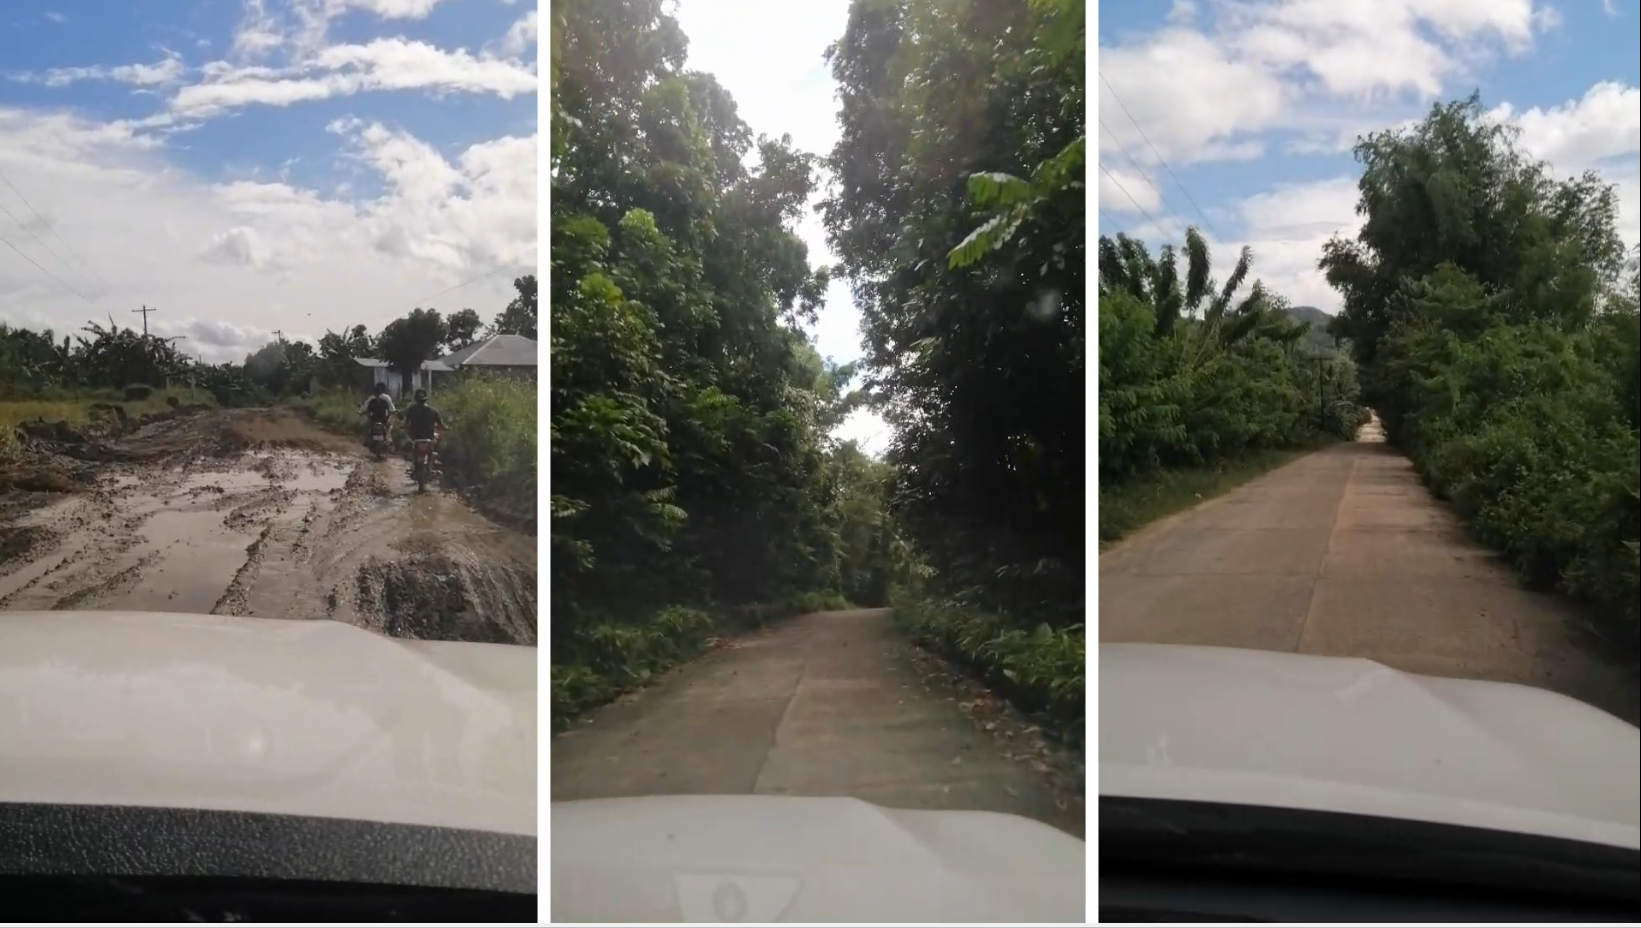 De wegen op het eiland Panay zijn vaak slecht